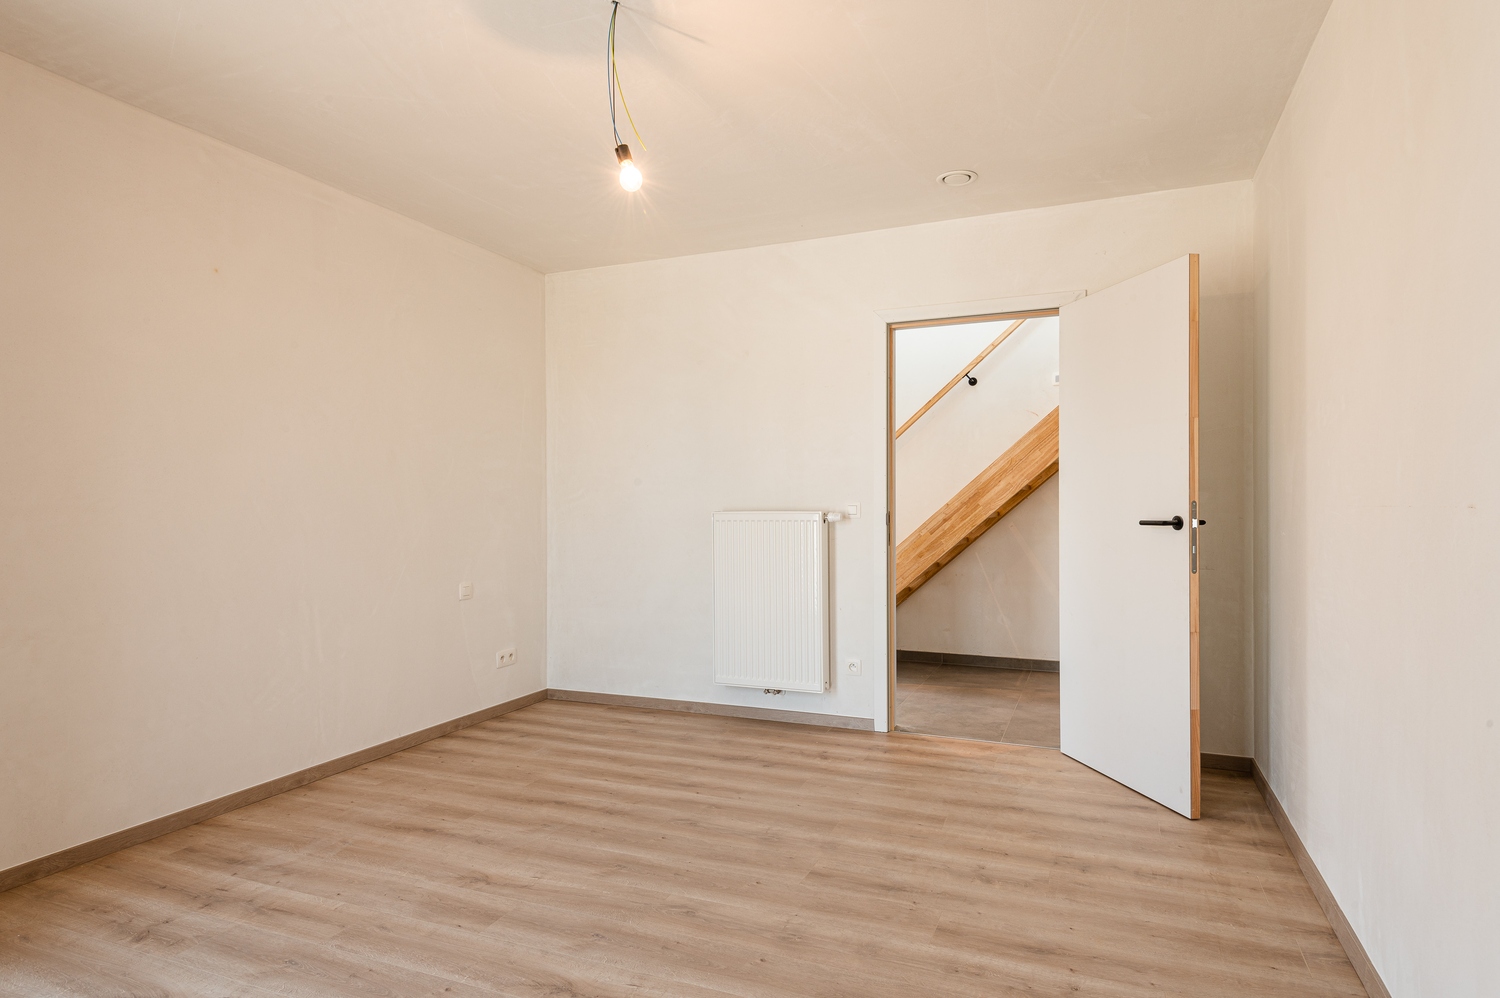 Nieuwbouw duplex appartement in Boekhoute - 6% BTW mogelijk foto 16